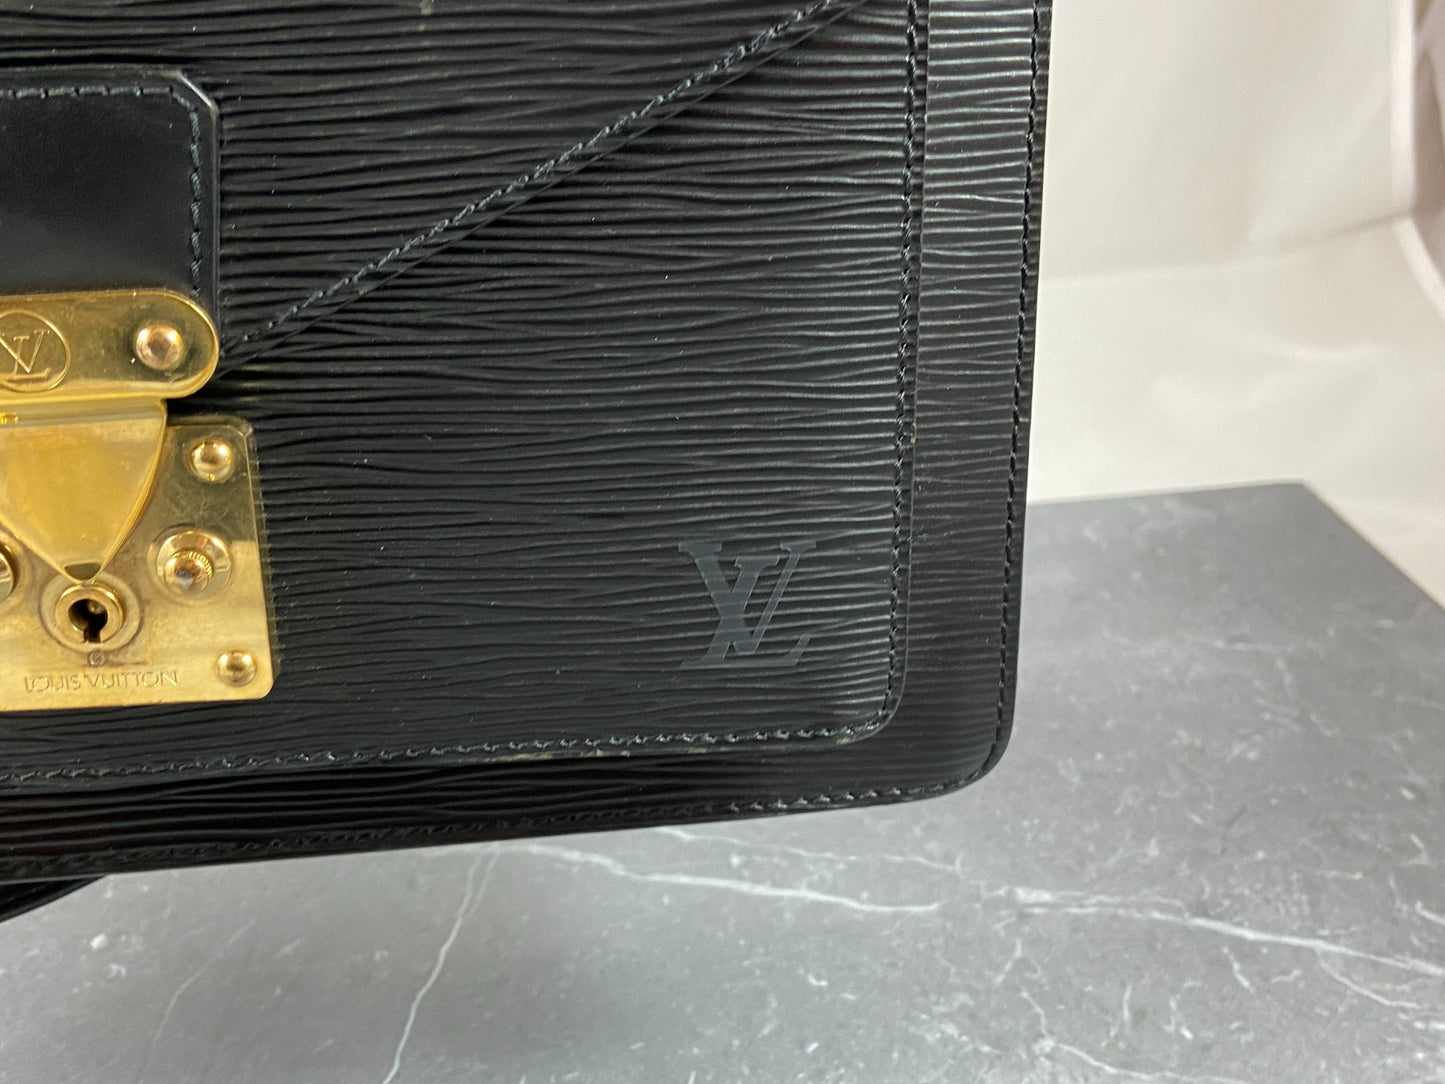 Louis Vuitton Monceau 28 Black Epi Leather